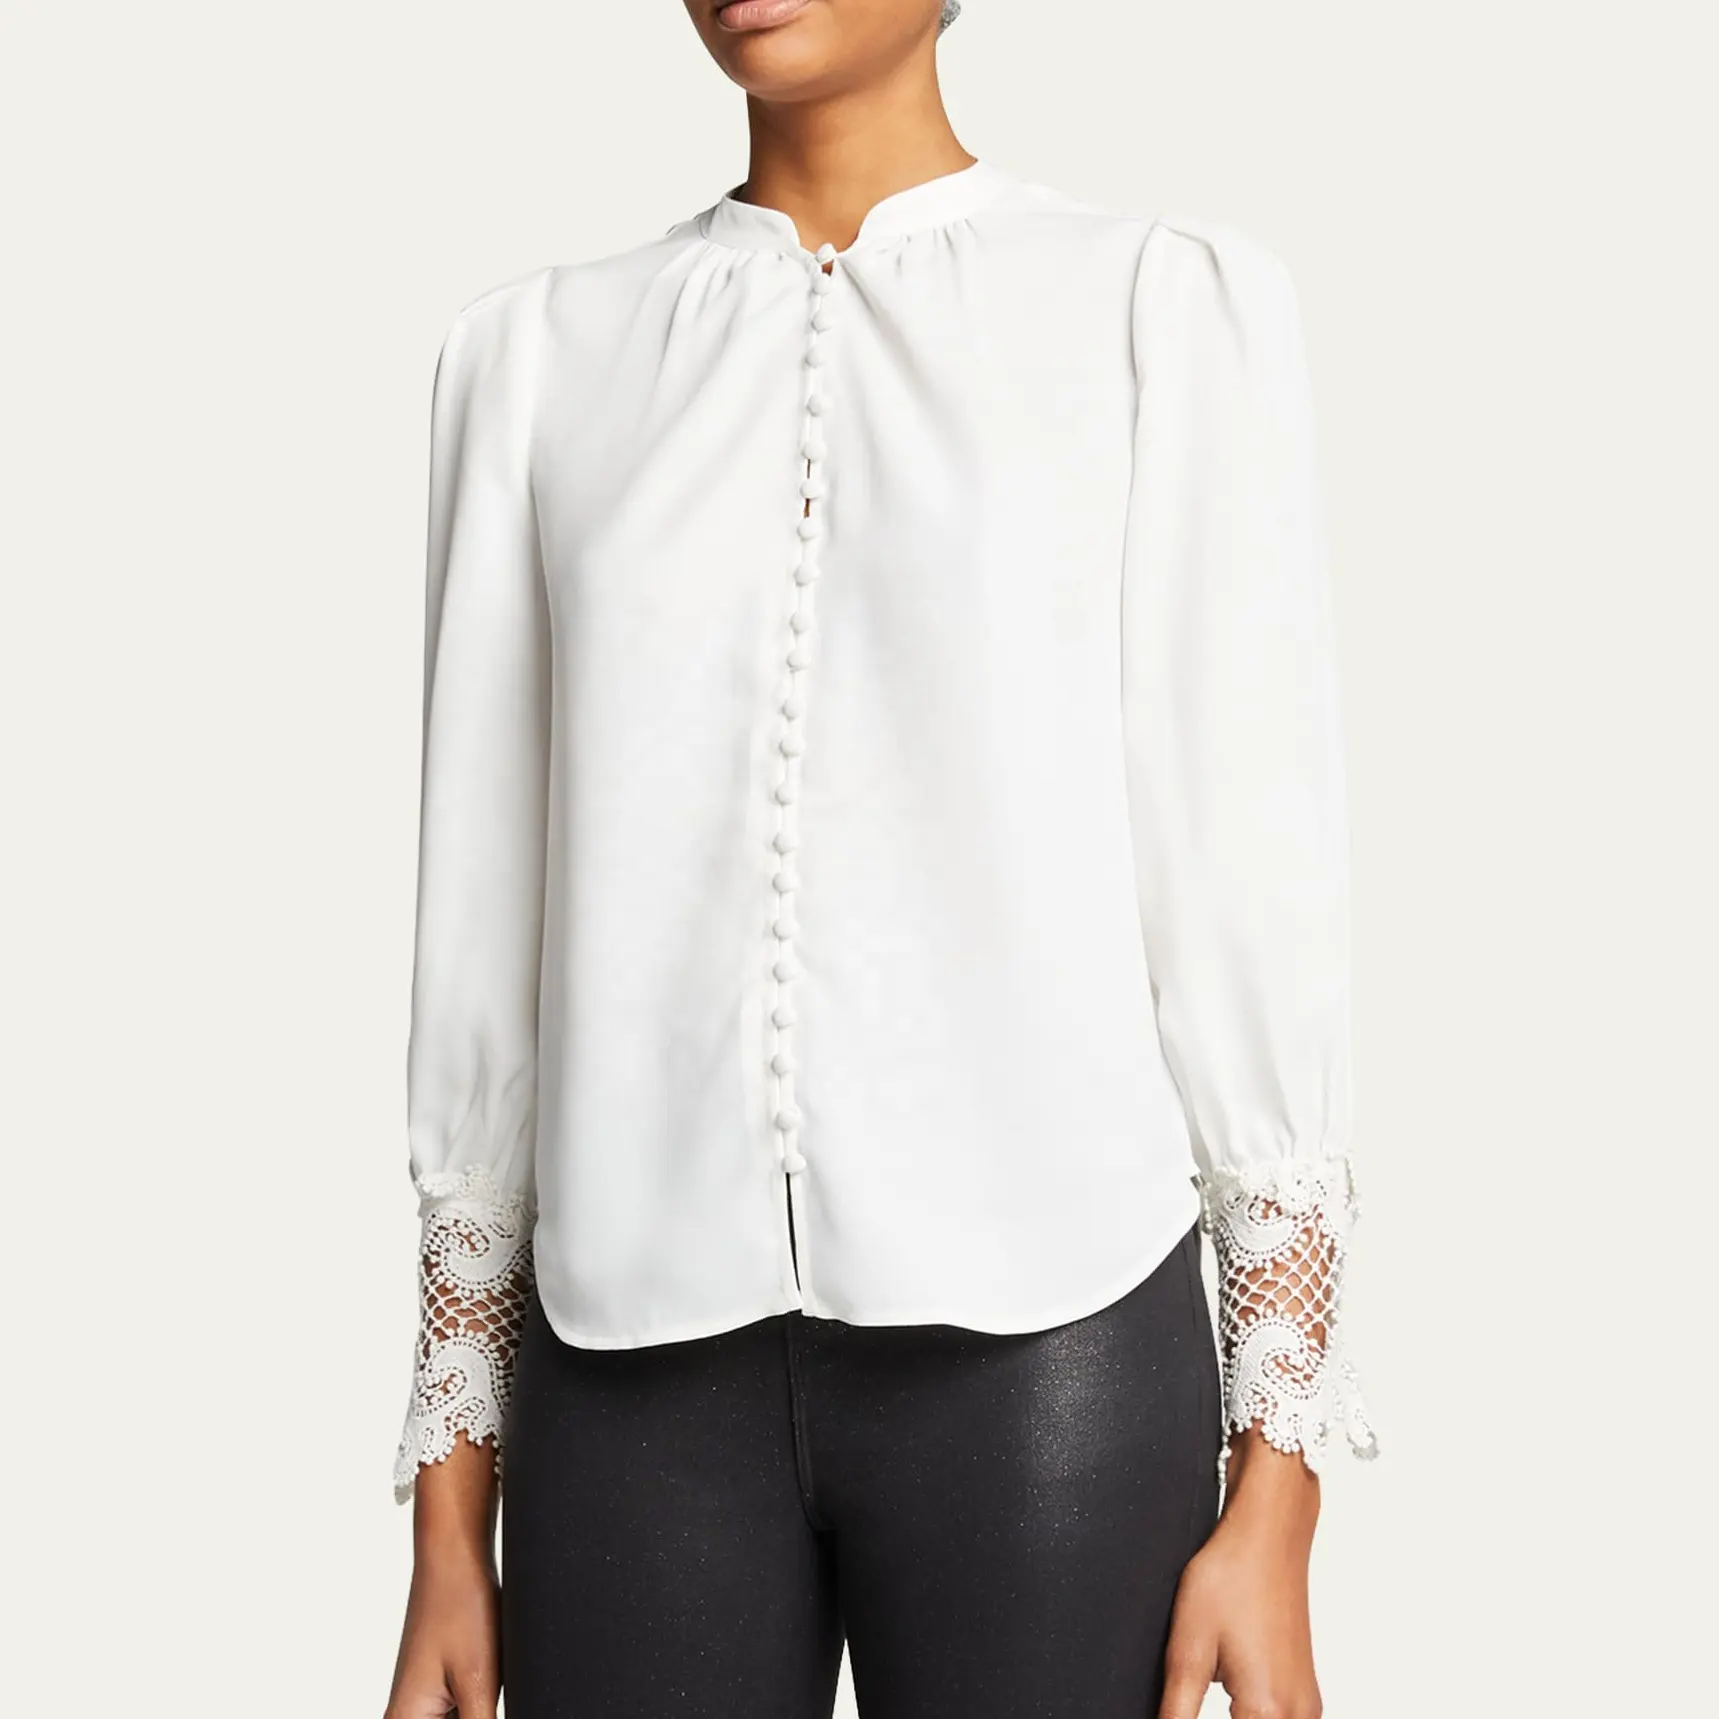 Moda personalizada roupas femininas formal cor sólida camisa de manga comprida básica elegante rendas chiffon camisa desgaste do escritório das mulheres